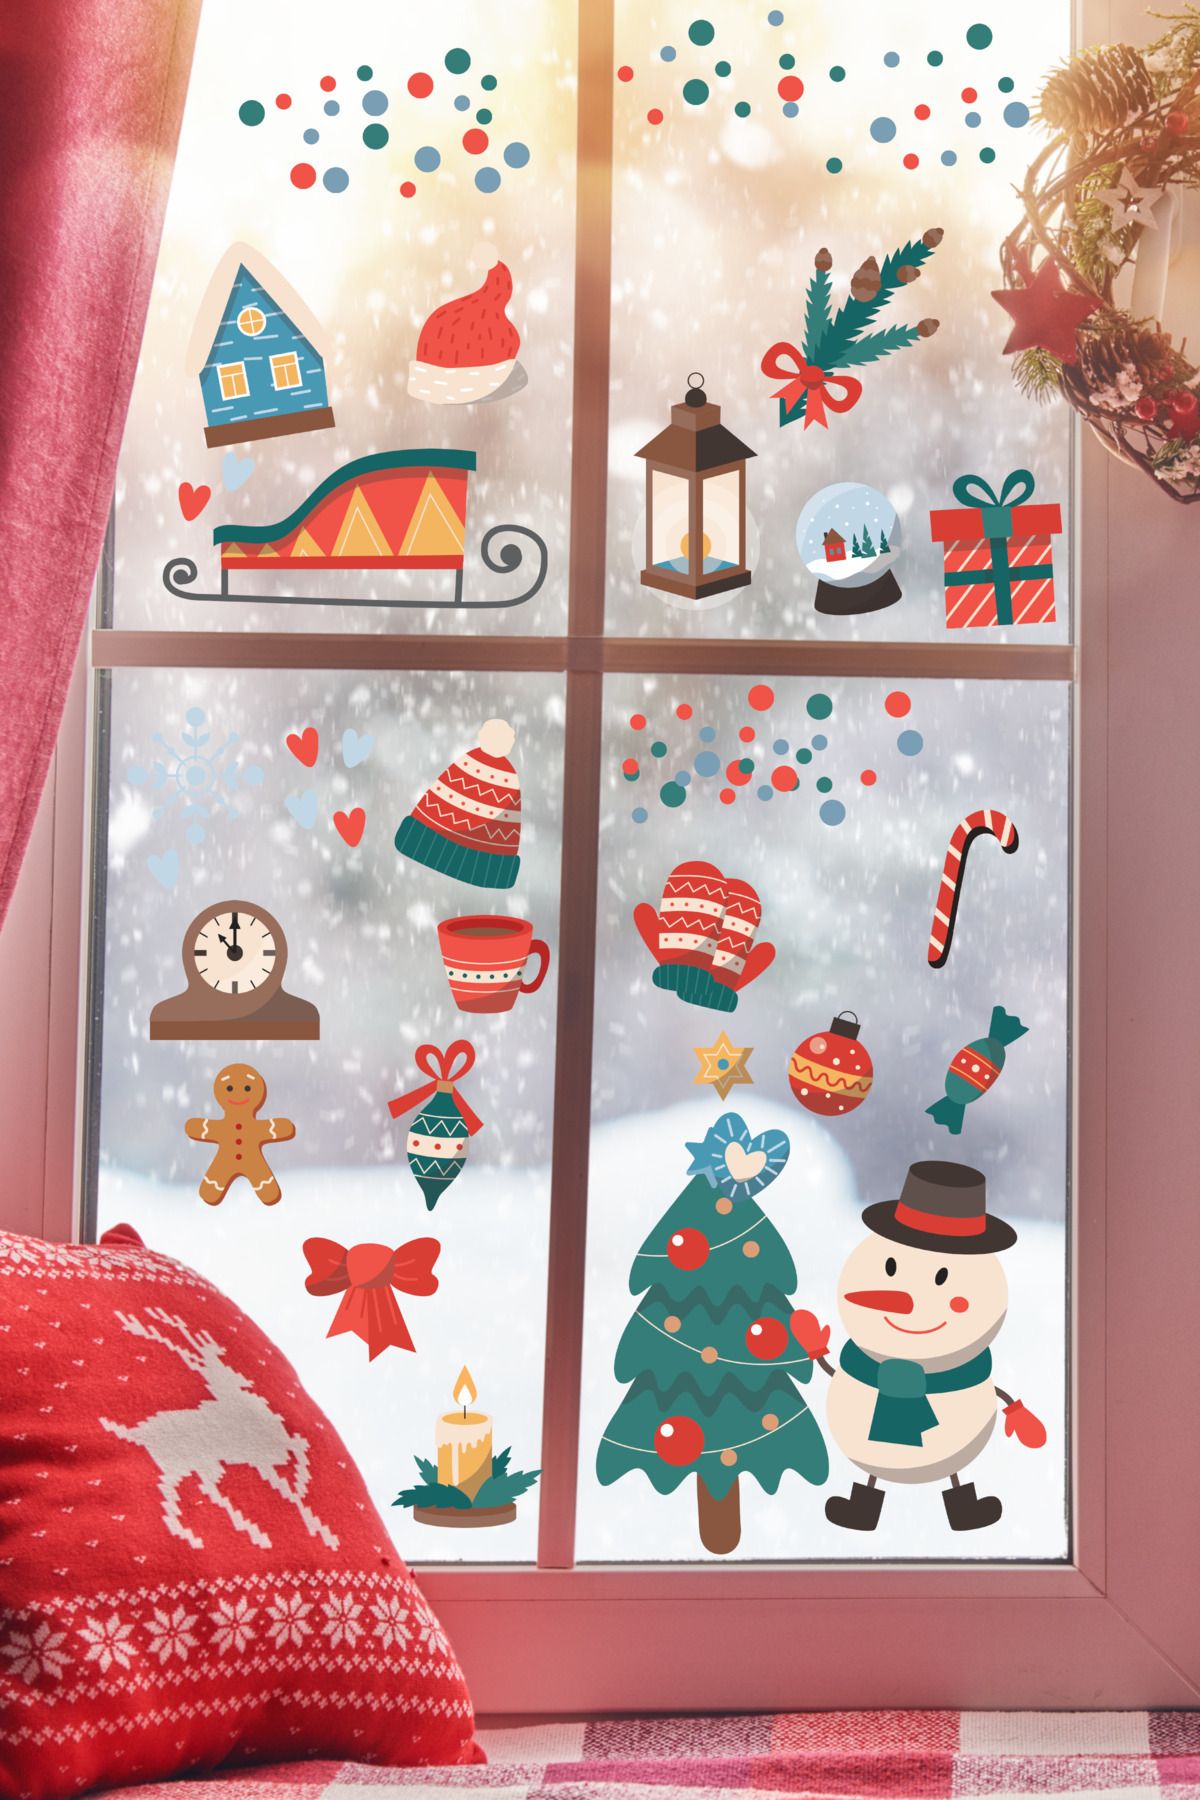 postifull Yılbaşı Sticker Seti, Yeni Yıl Yılbaşı Süsü, Yılbaşı Dekoru, Kapı, Duvar Ve Cam Dekorasyon Stickerı